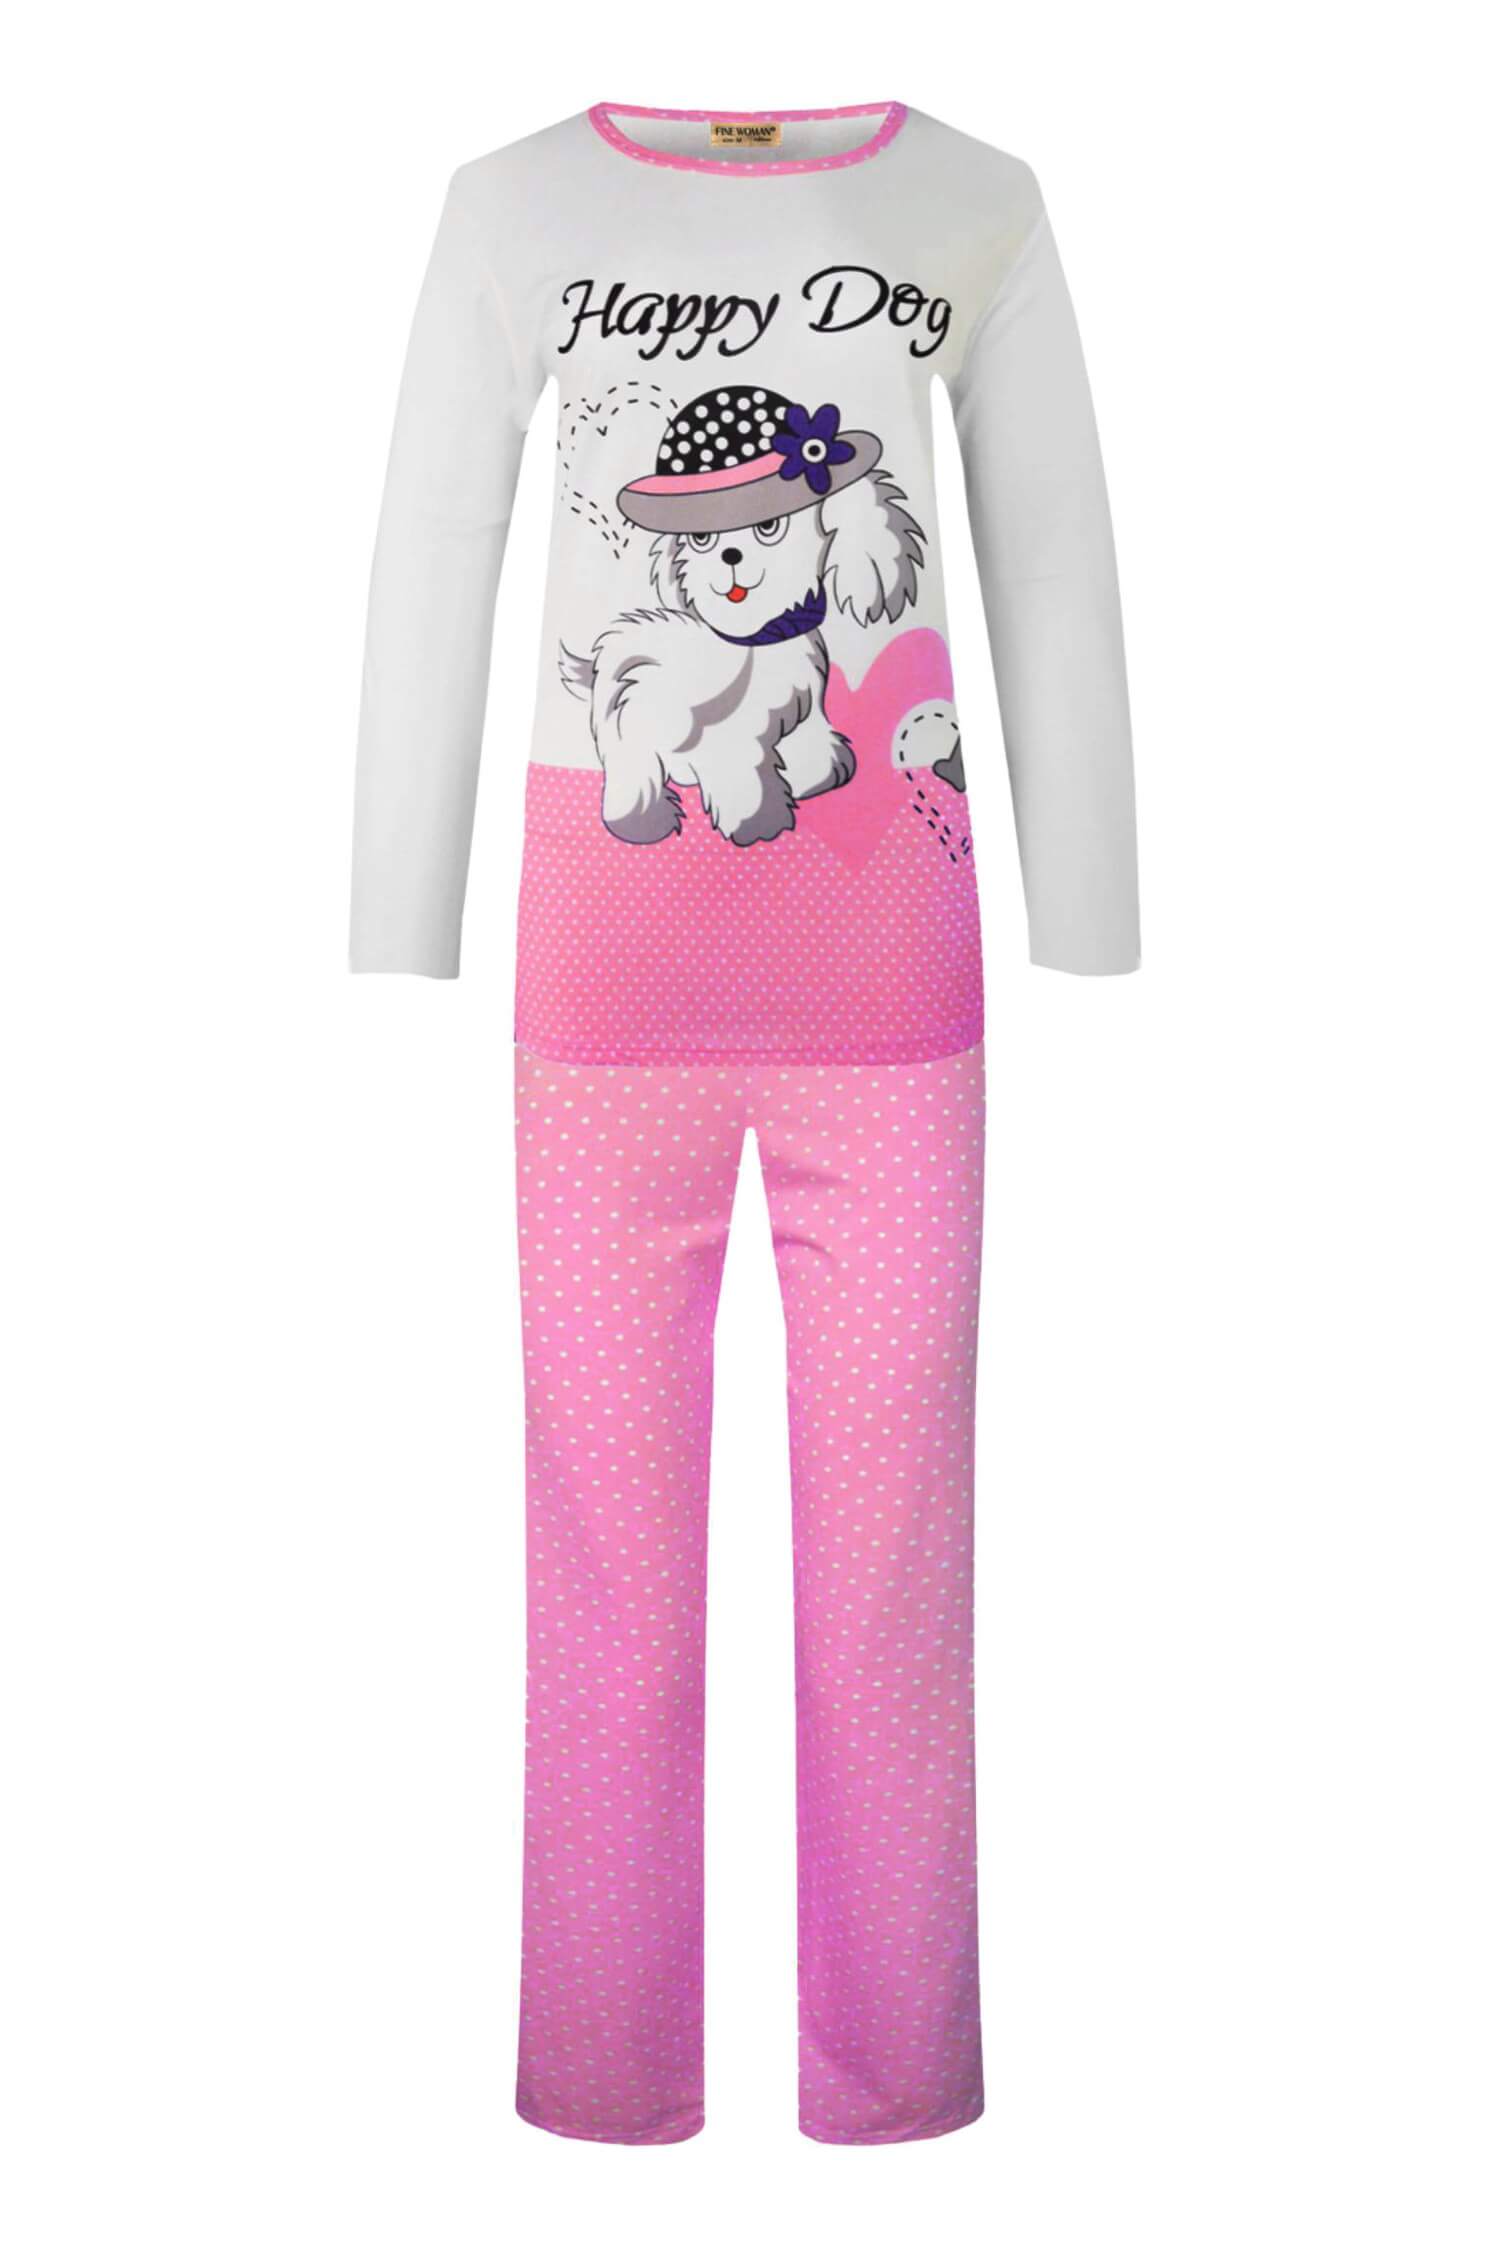 Doggy dvojdílné pyžamo dlouhé 2292 XL světle růžová